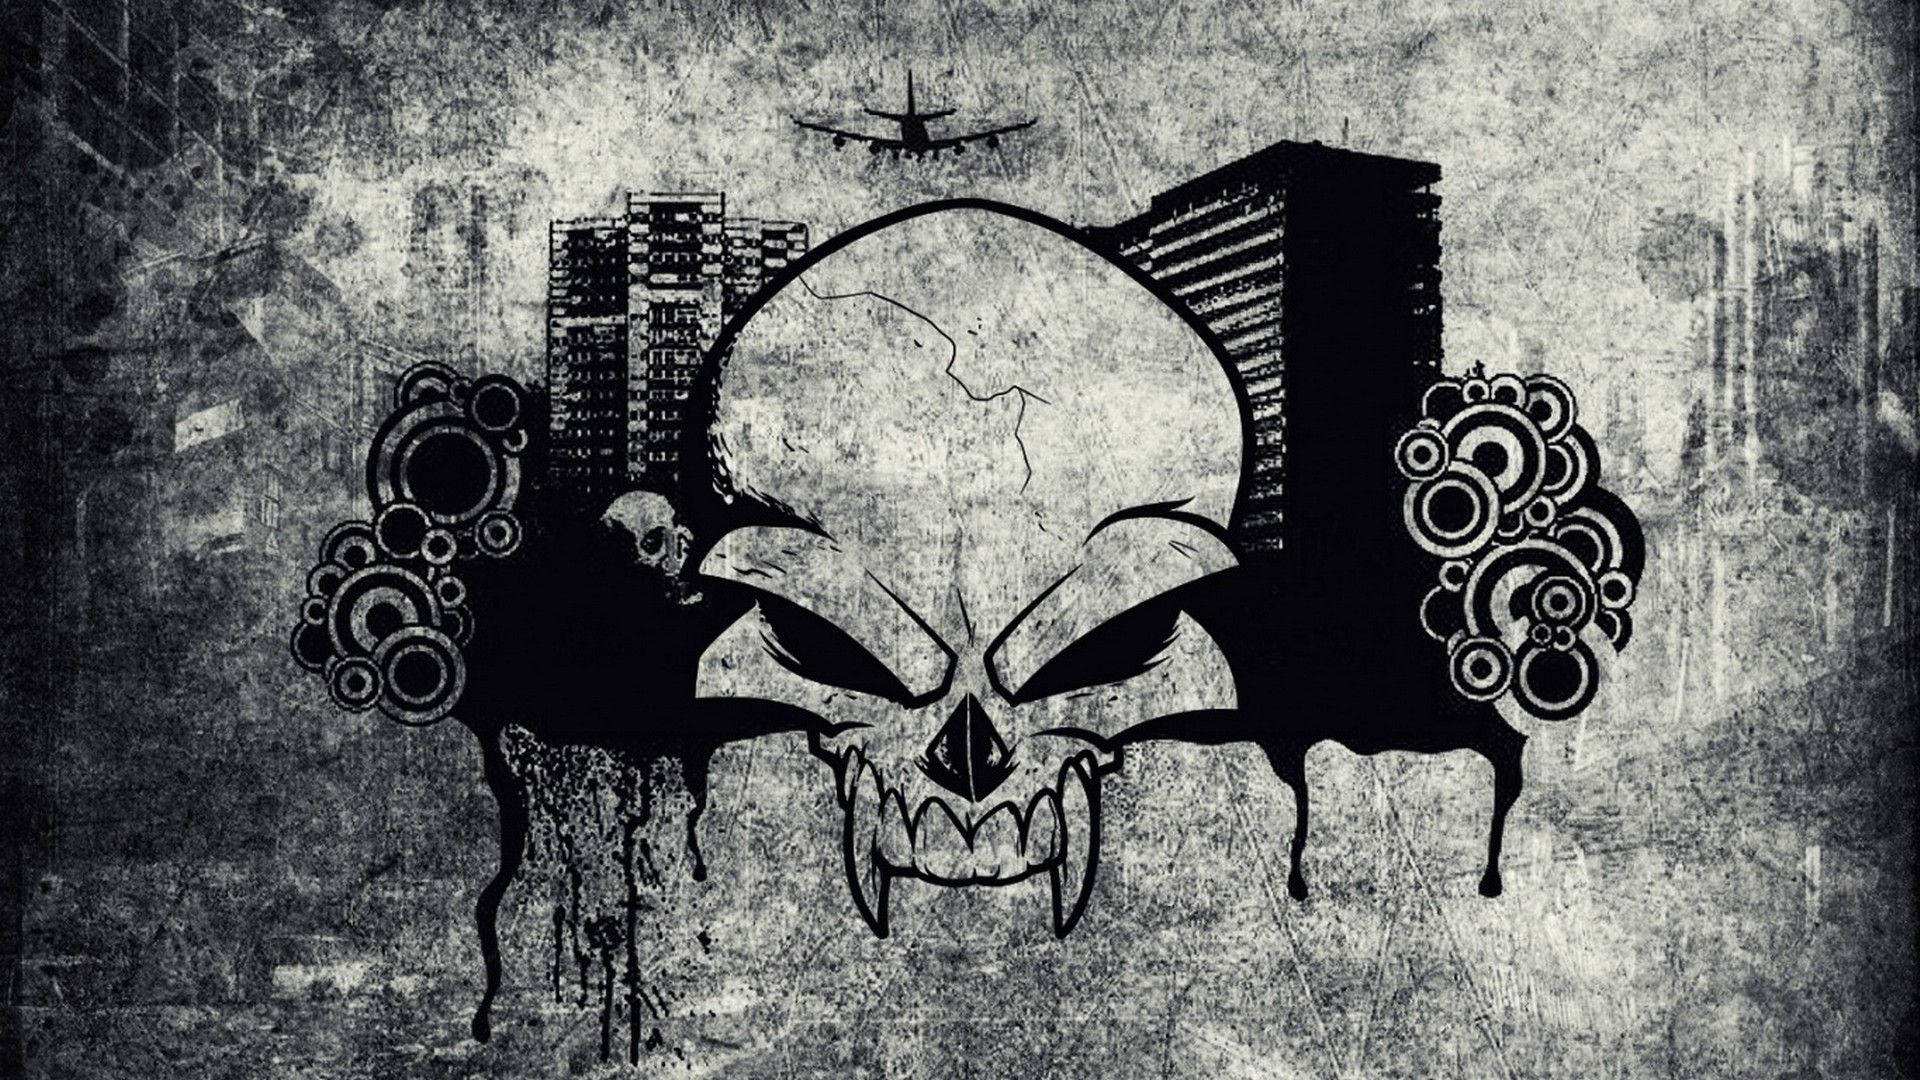 graffiti wallpaper skull